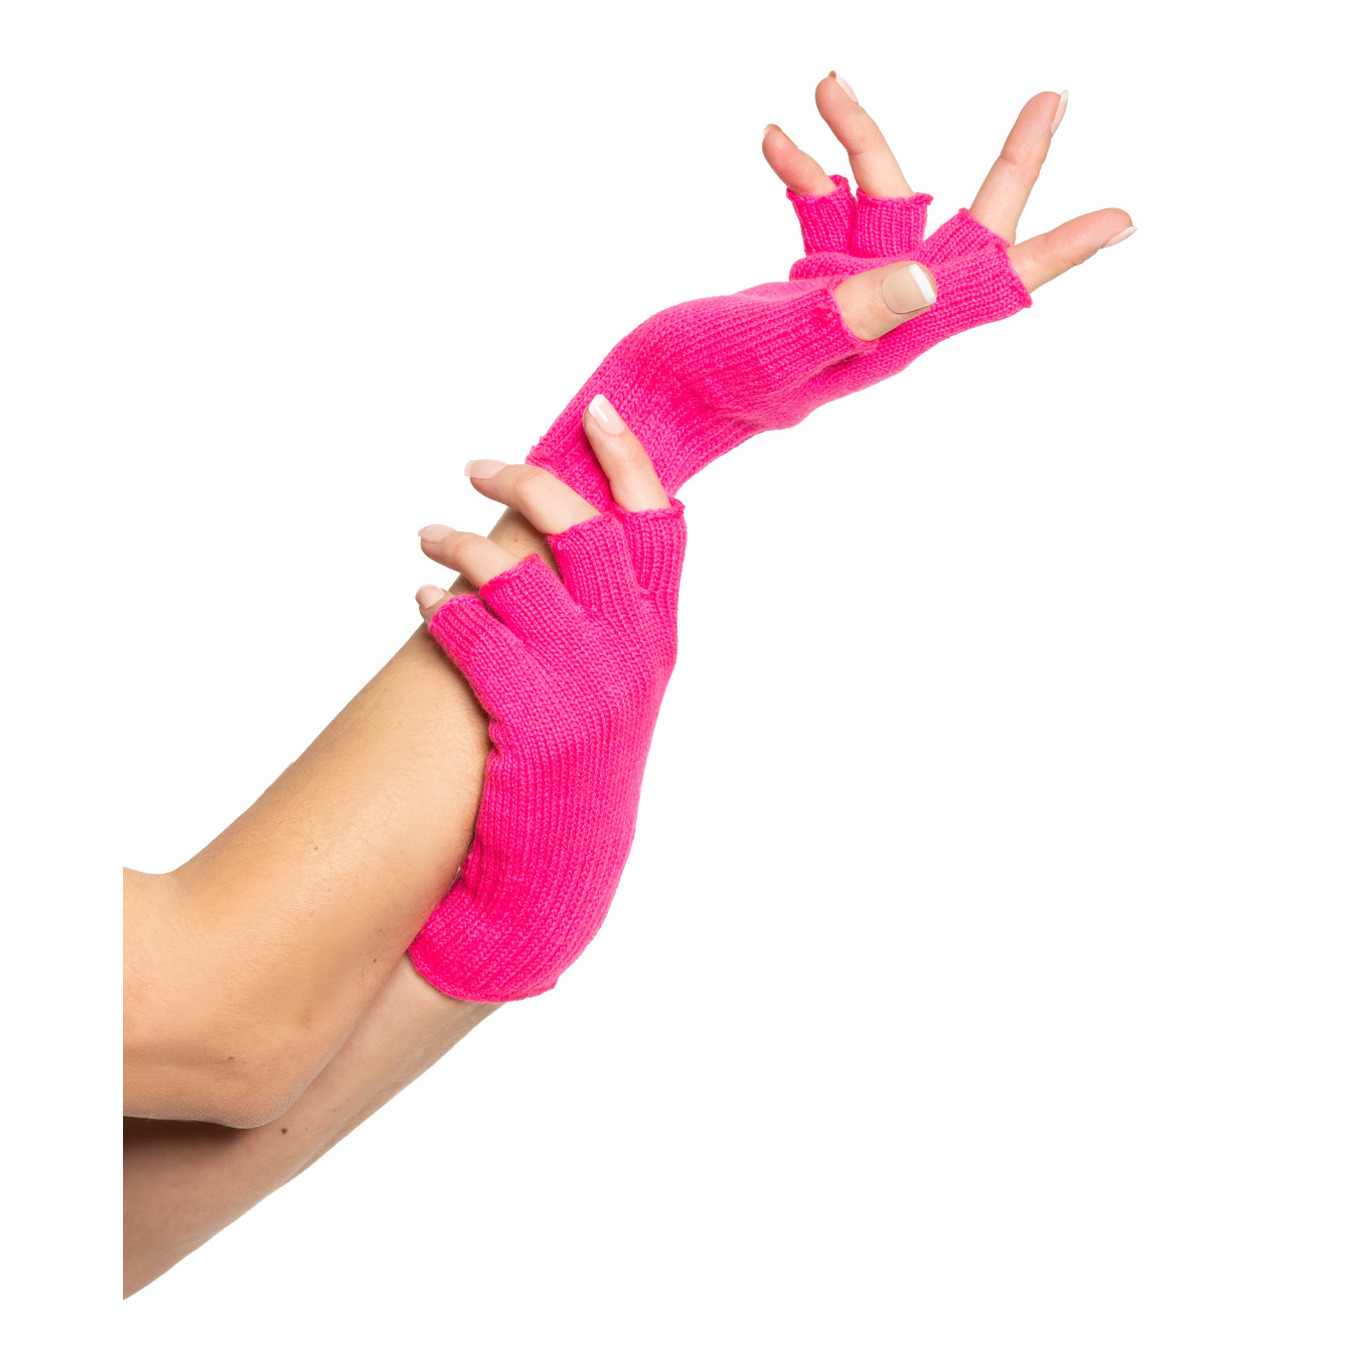 Verkleed handschoenen vingerloos roze one size voor volwassenen